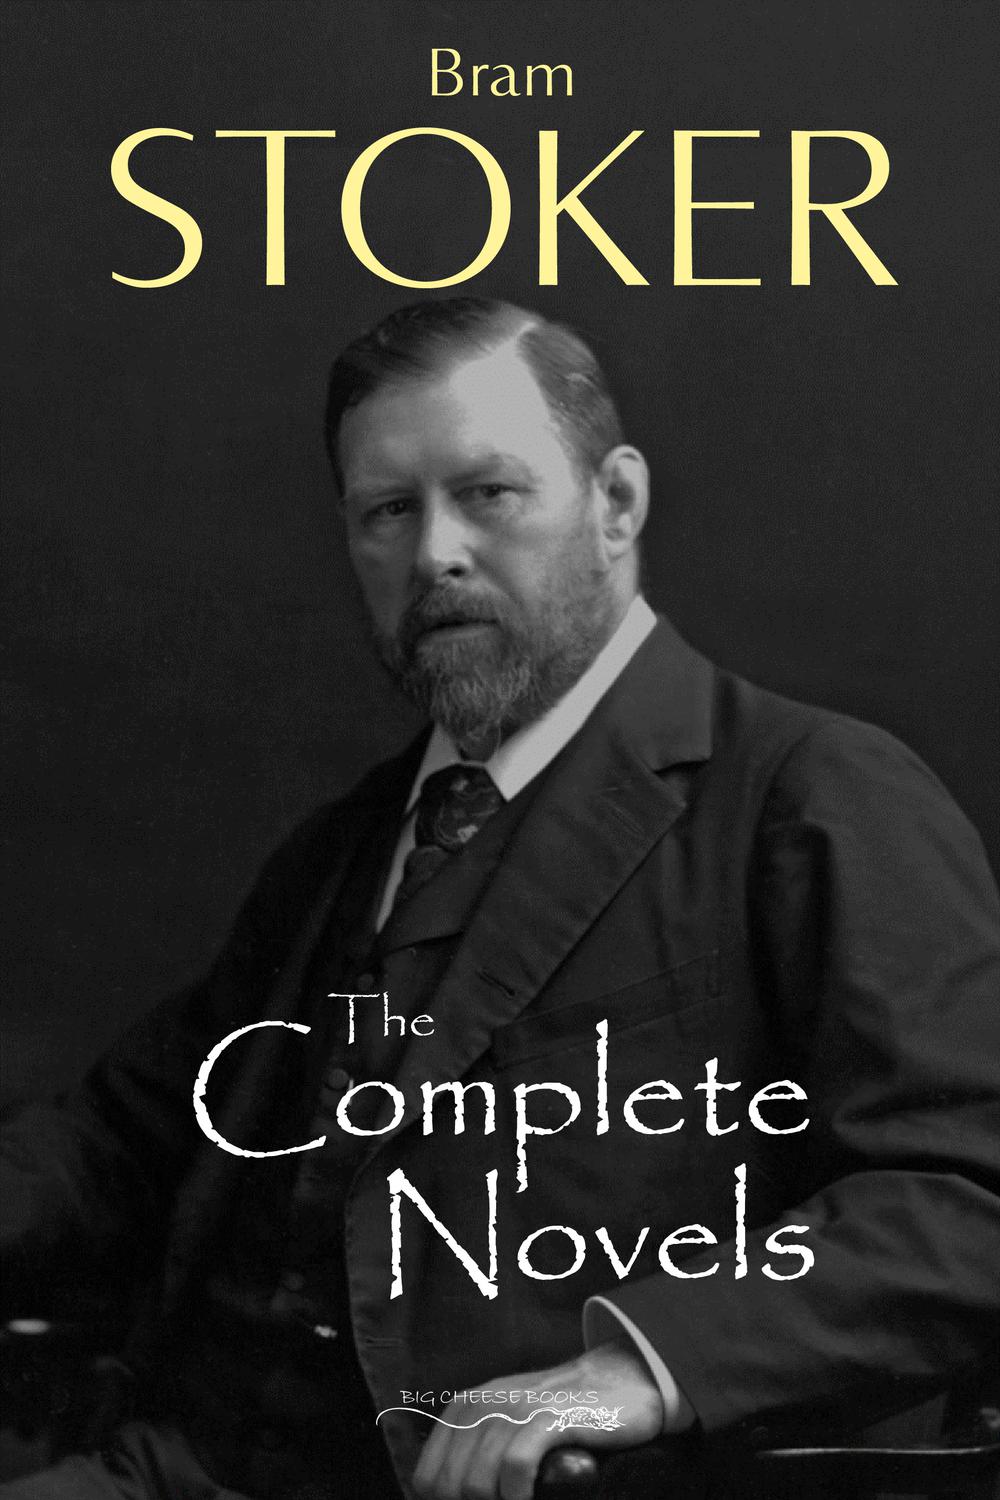 The Complete Novels of Bram Stoker - Bram Stoker